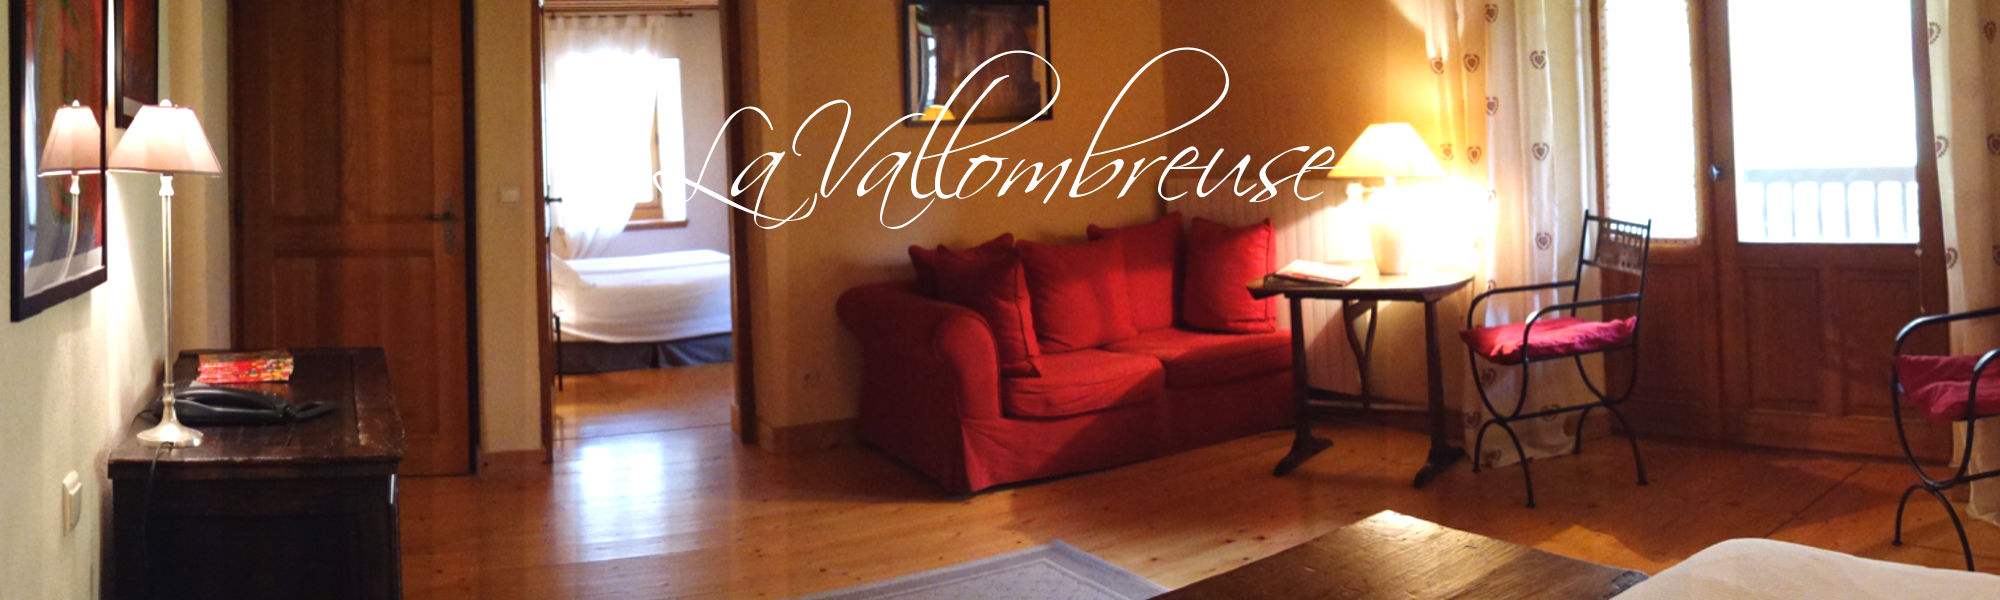 La Vallombreuse - Chambre d'hôtes - Menthon St Bernard, Lac d'Annecy - Suite familiale